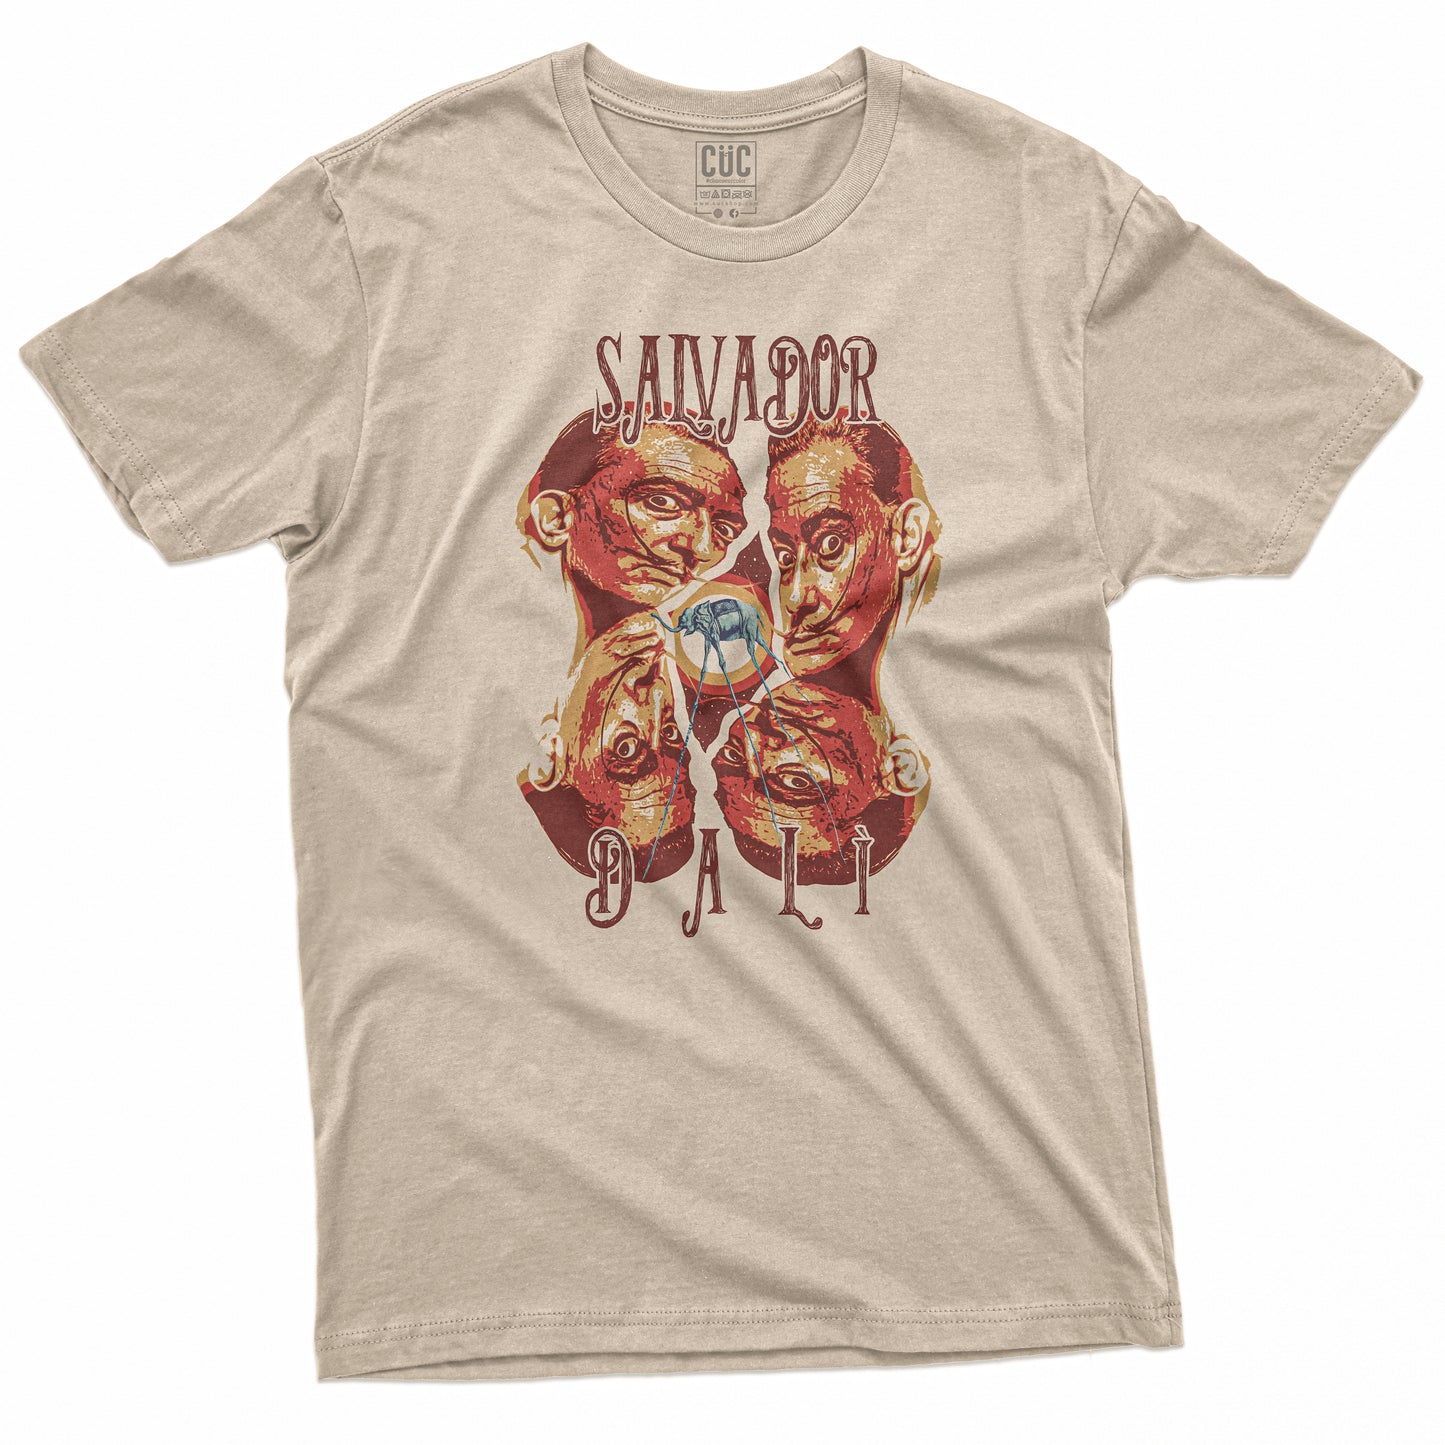 CUC T-Shirt DALì - Salvador Dalì - Sand #chooseurcolor